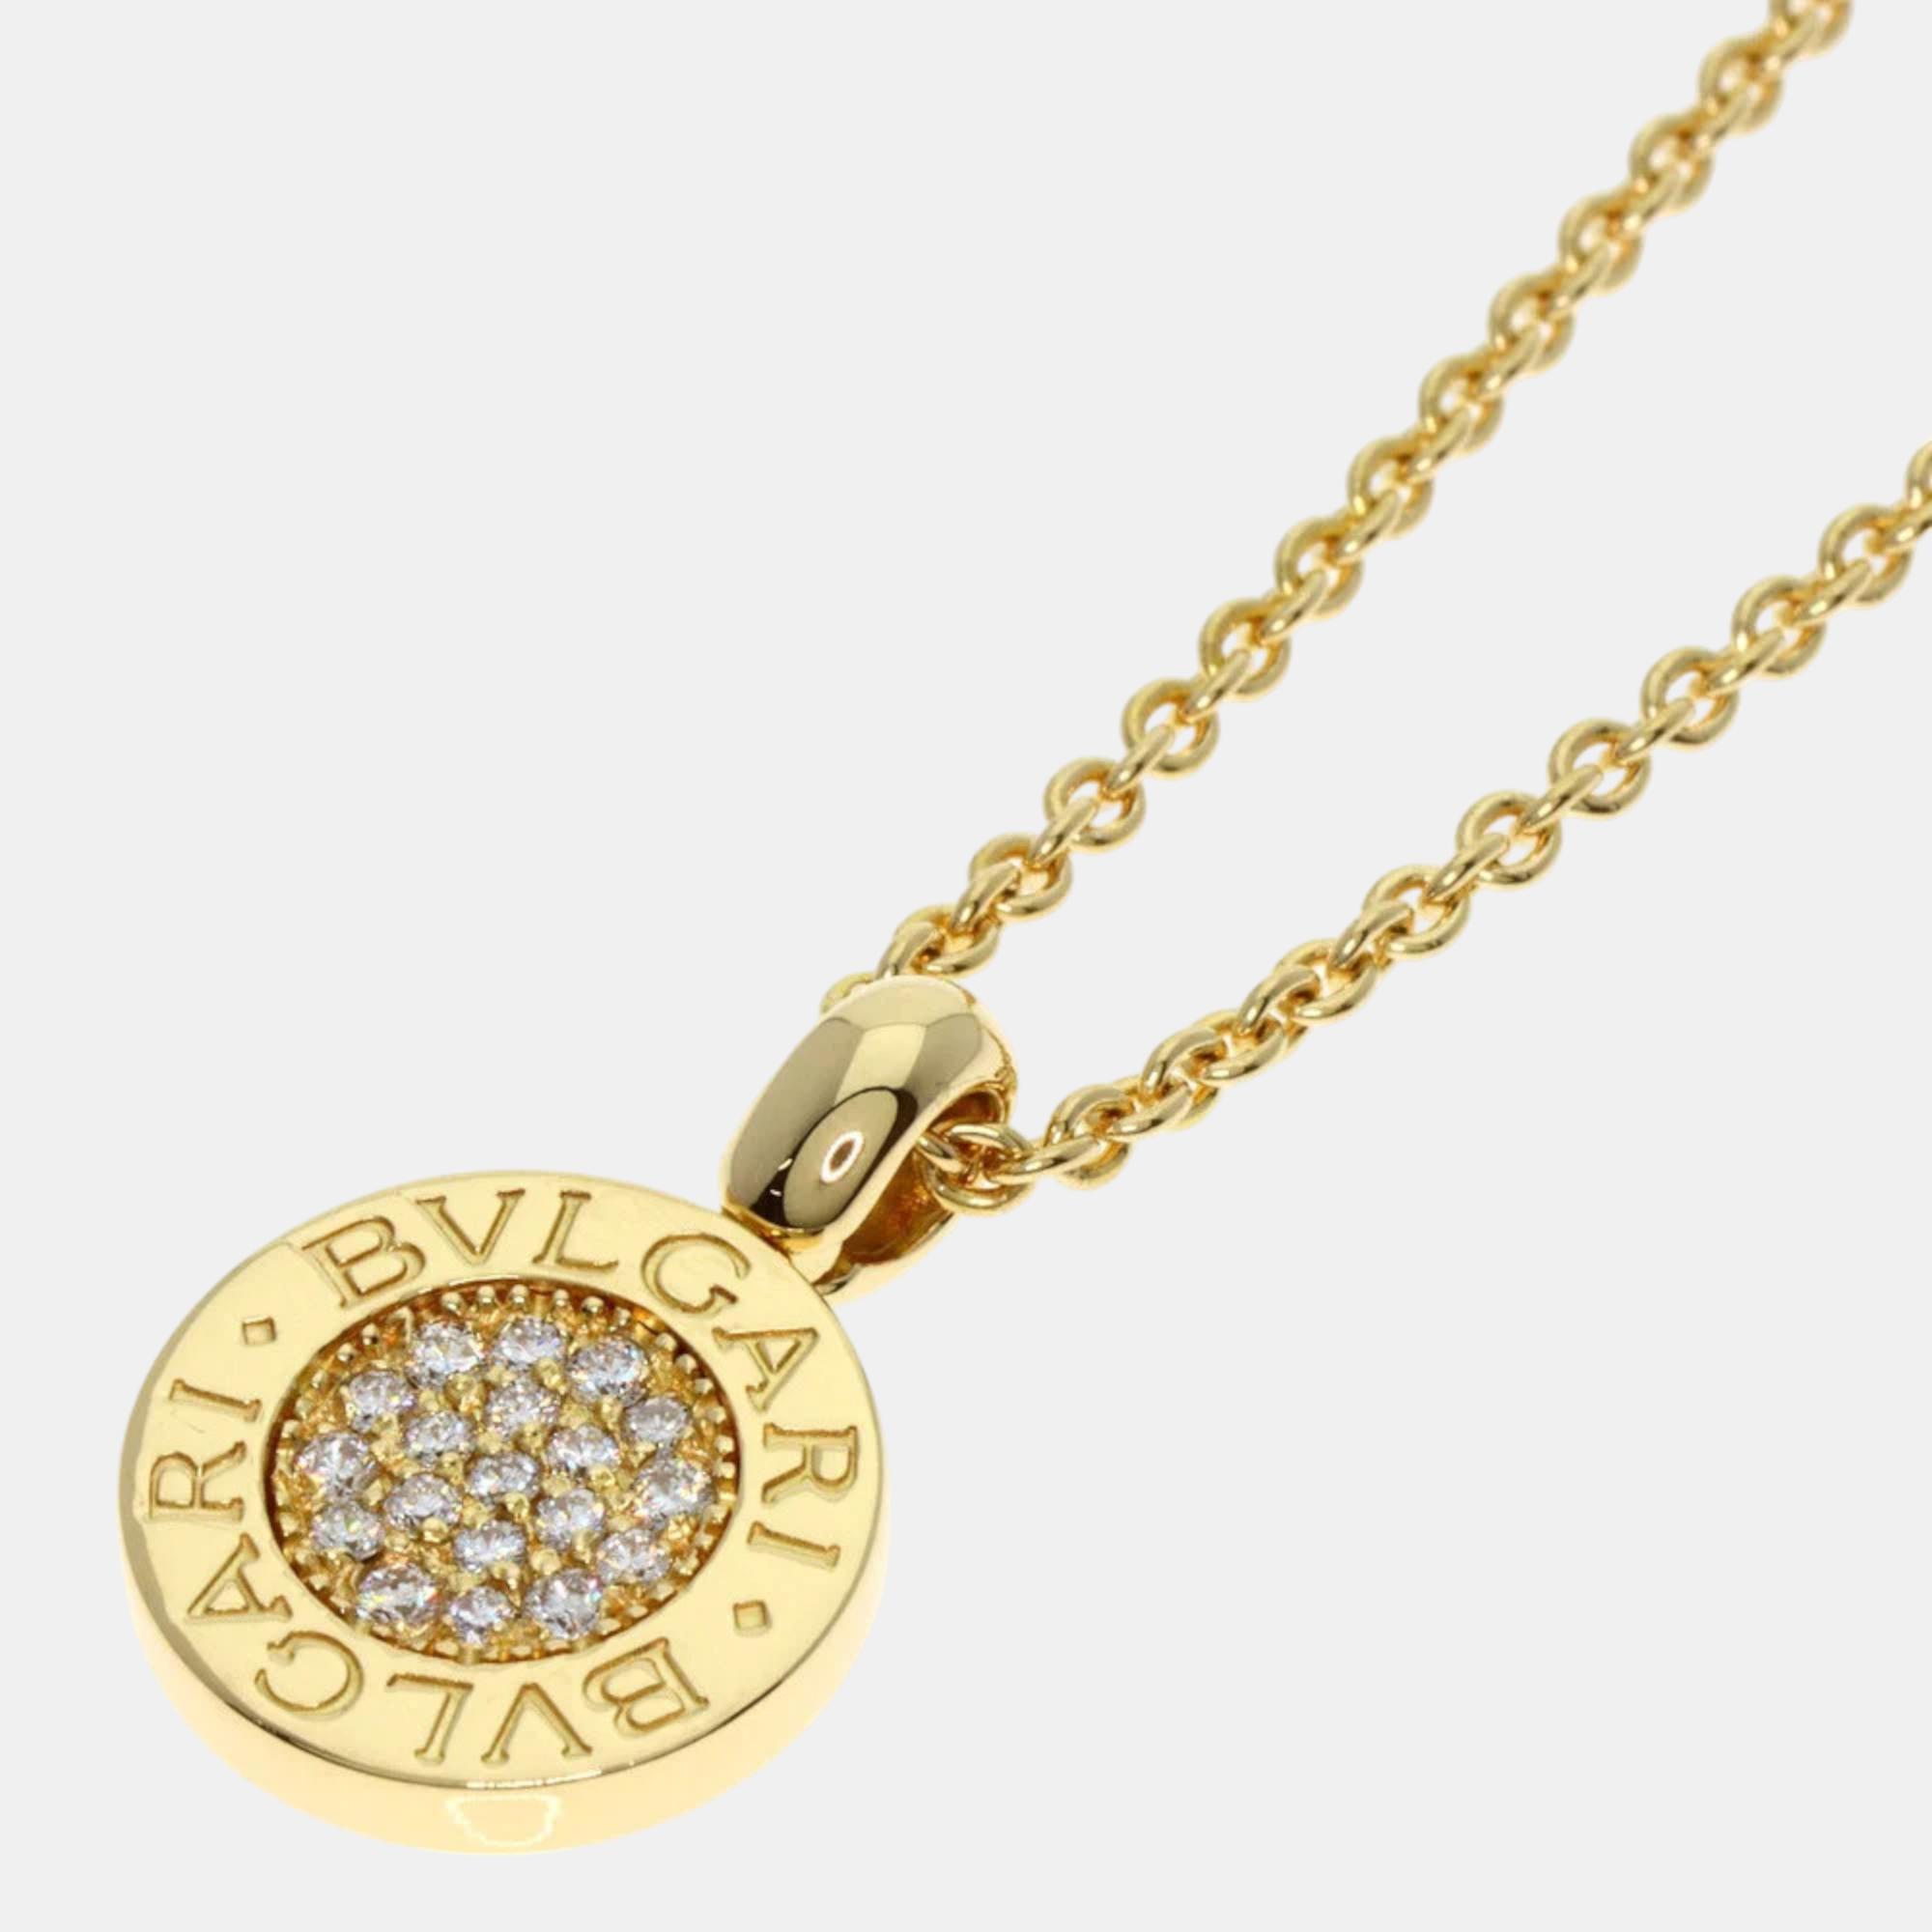 Bvlgari Bvlgari Bvlgari 18K Yellow Gold Diamond Necklace